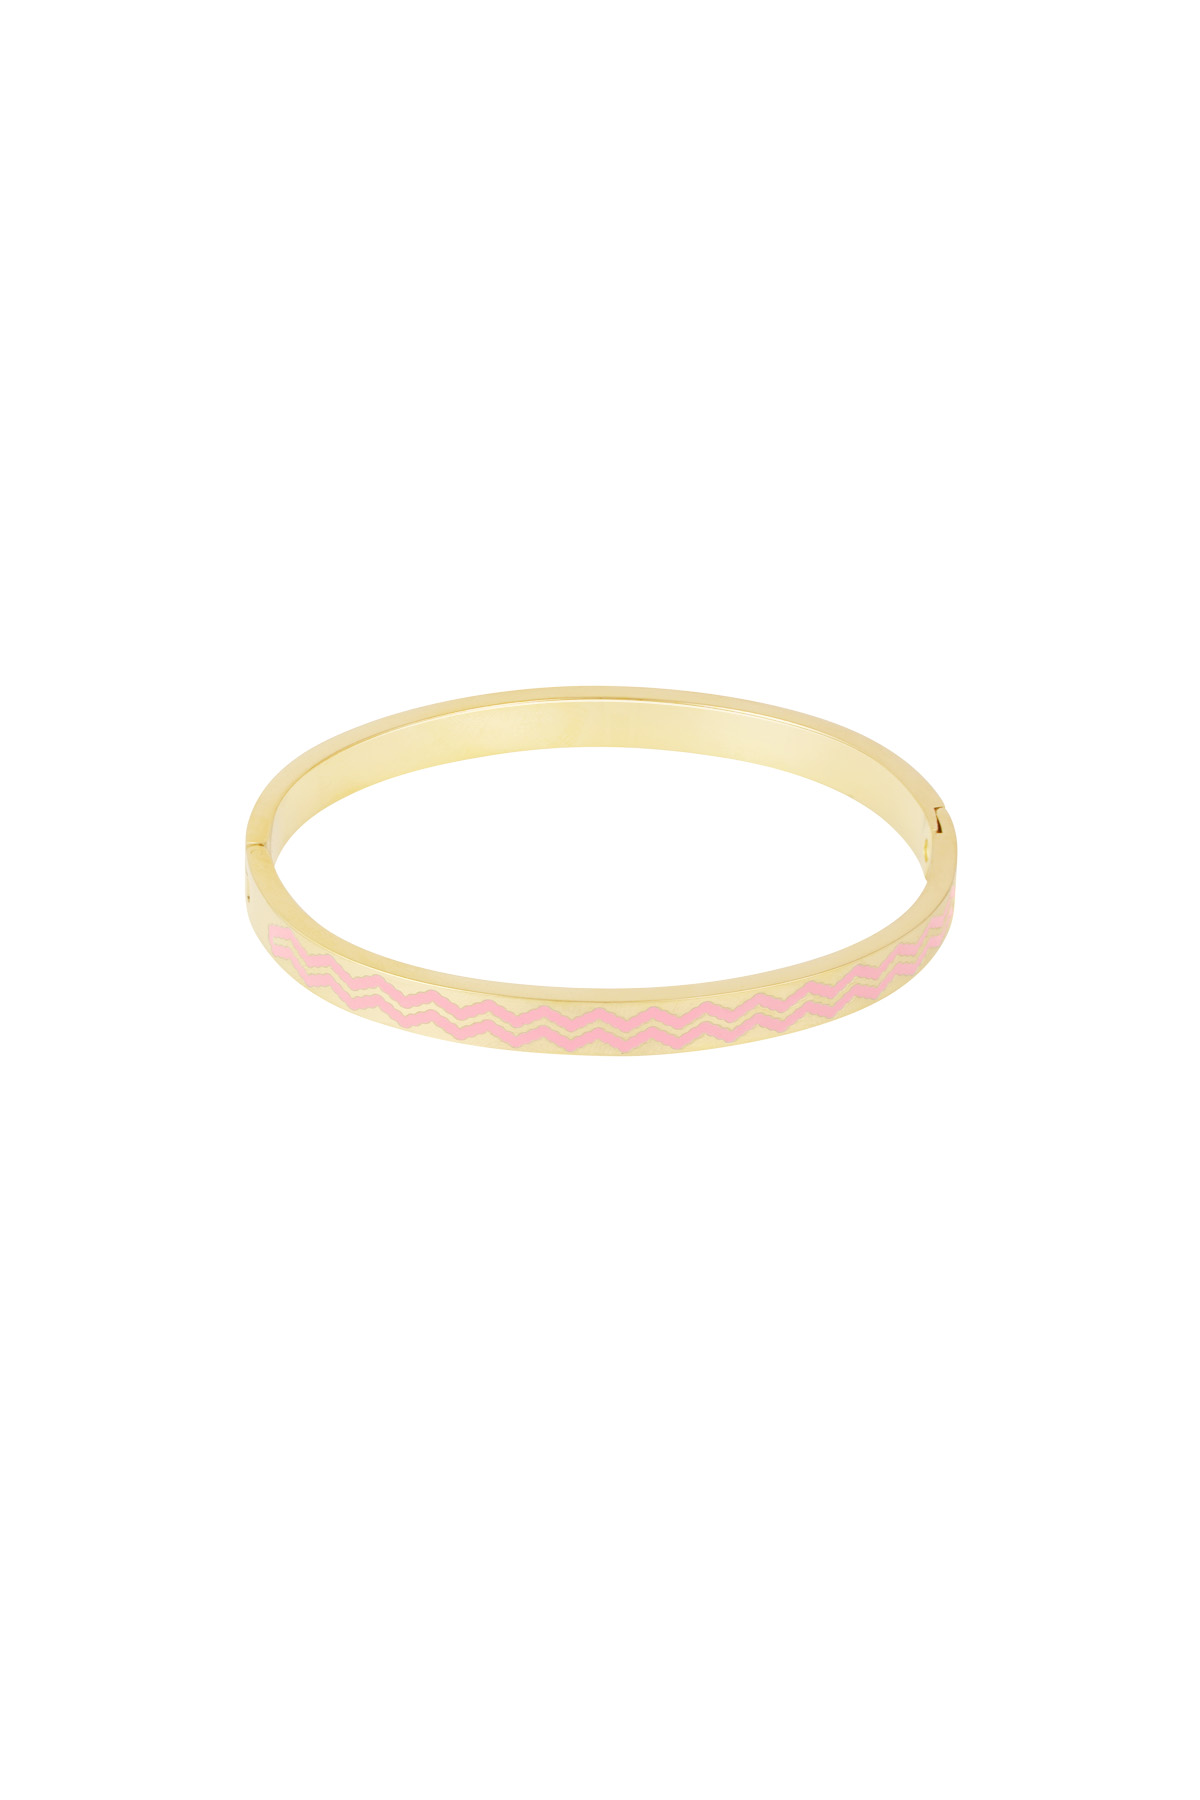 Slave bracelet with waves print - pink/gold  